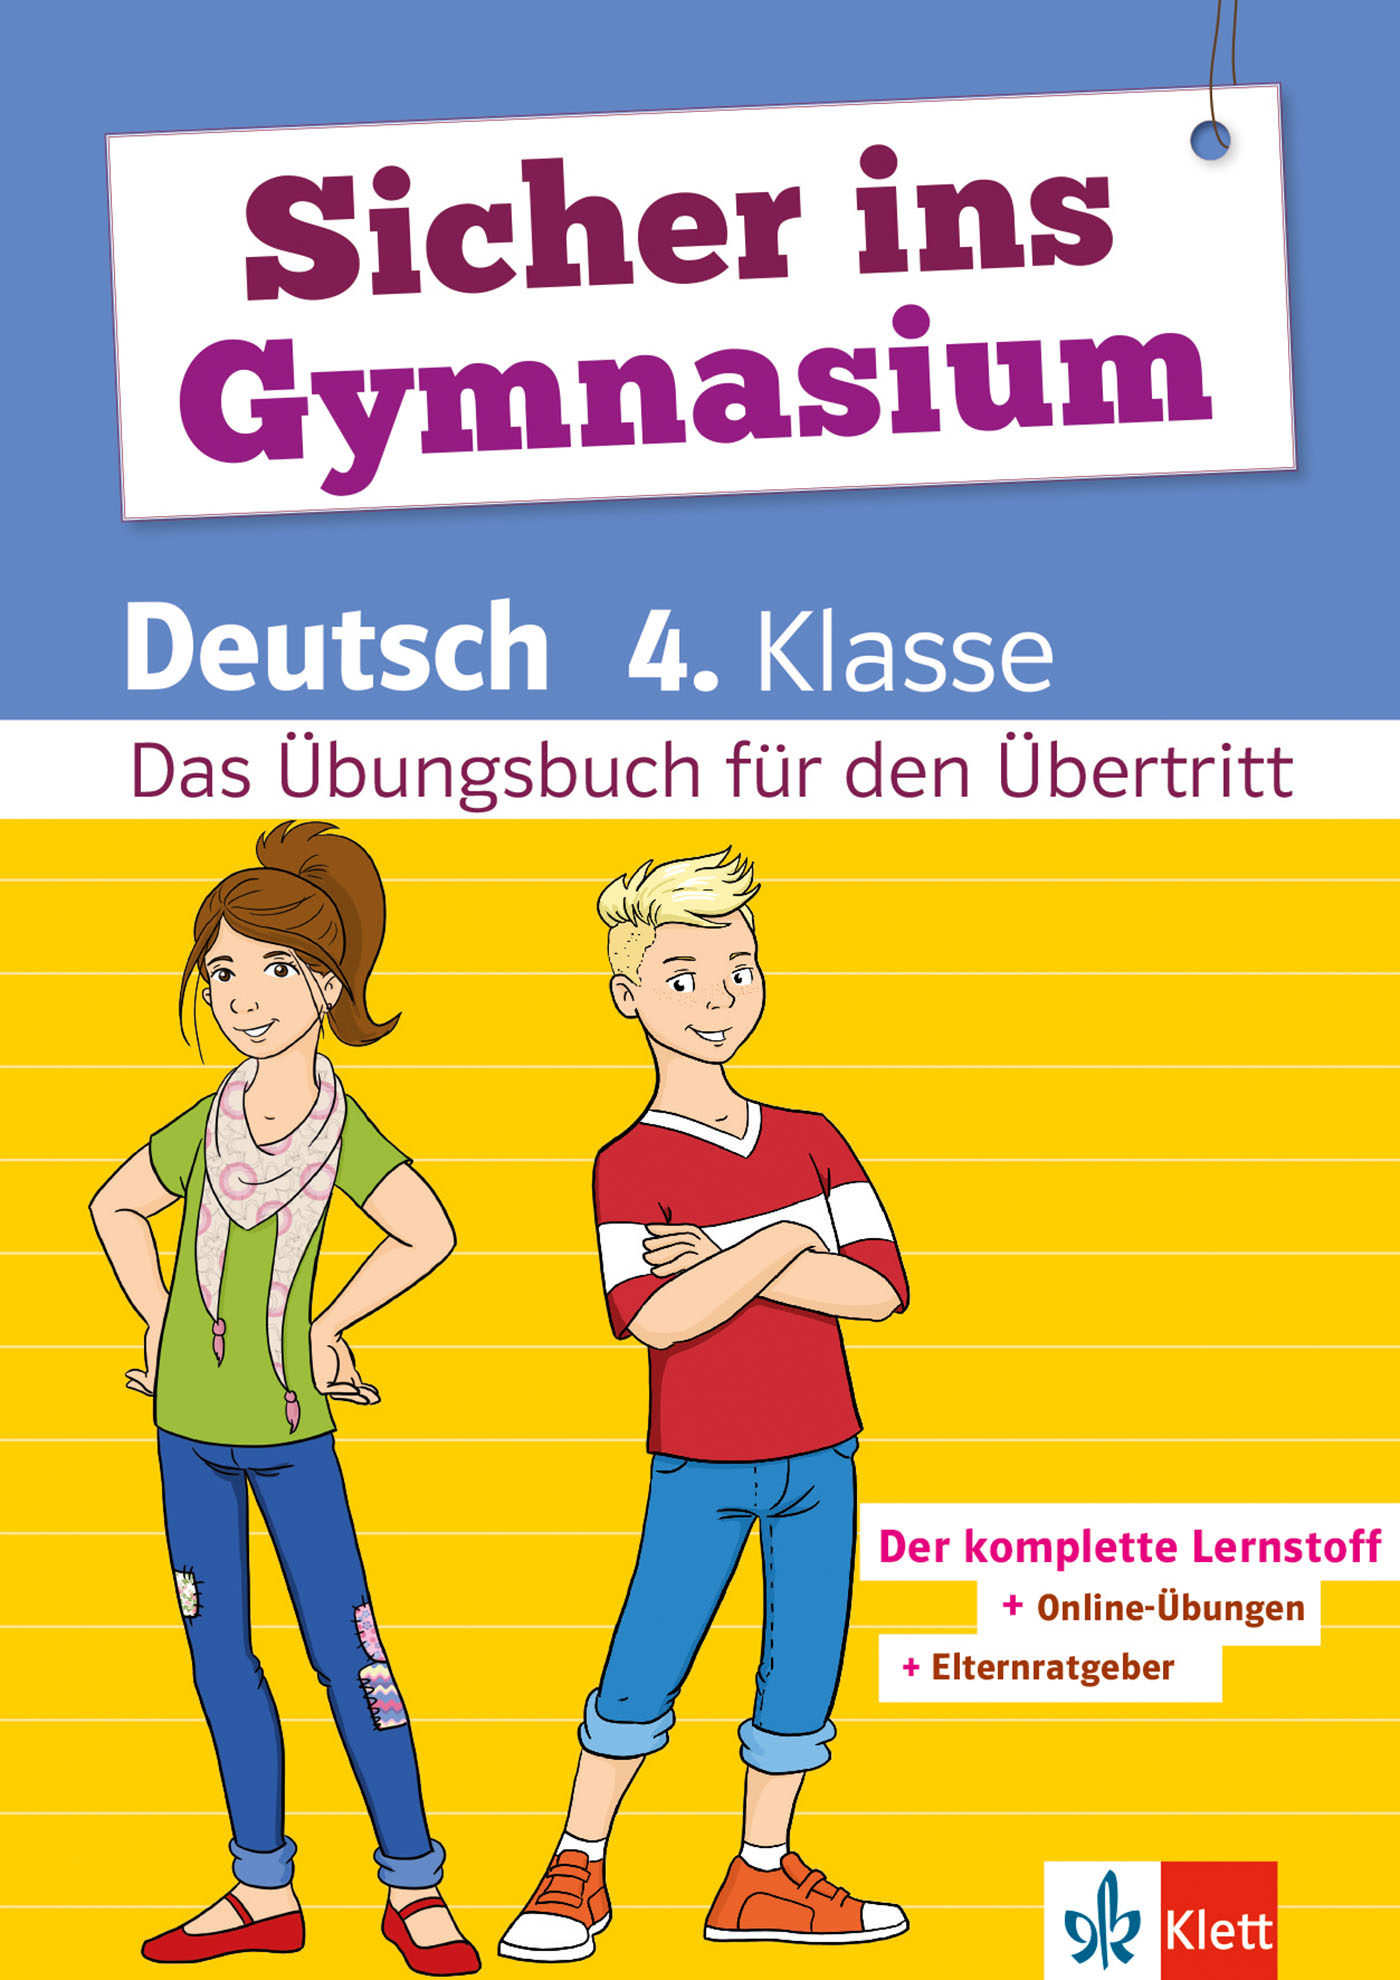 klett uebungsbuch deutsch4 e110 pk1041788 fhires